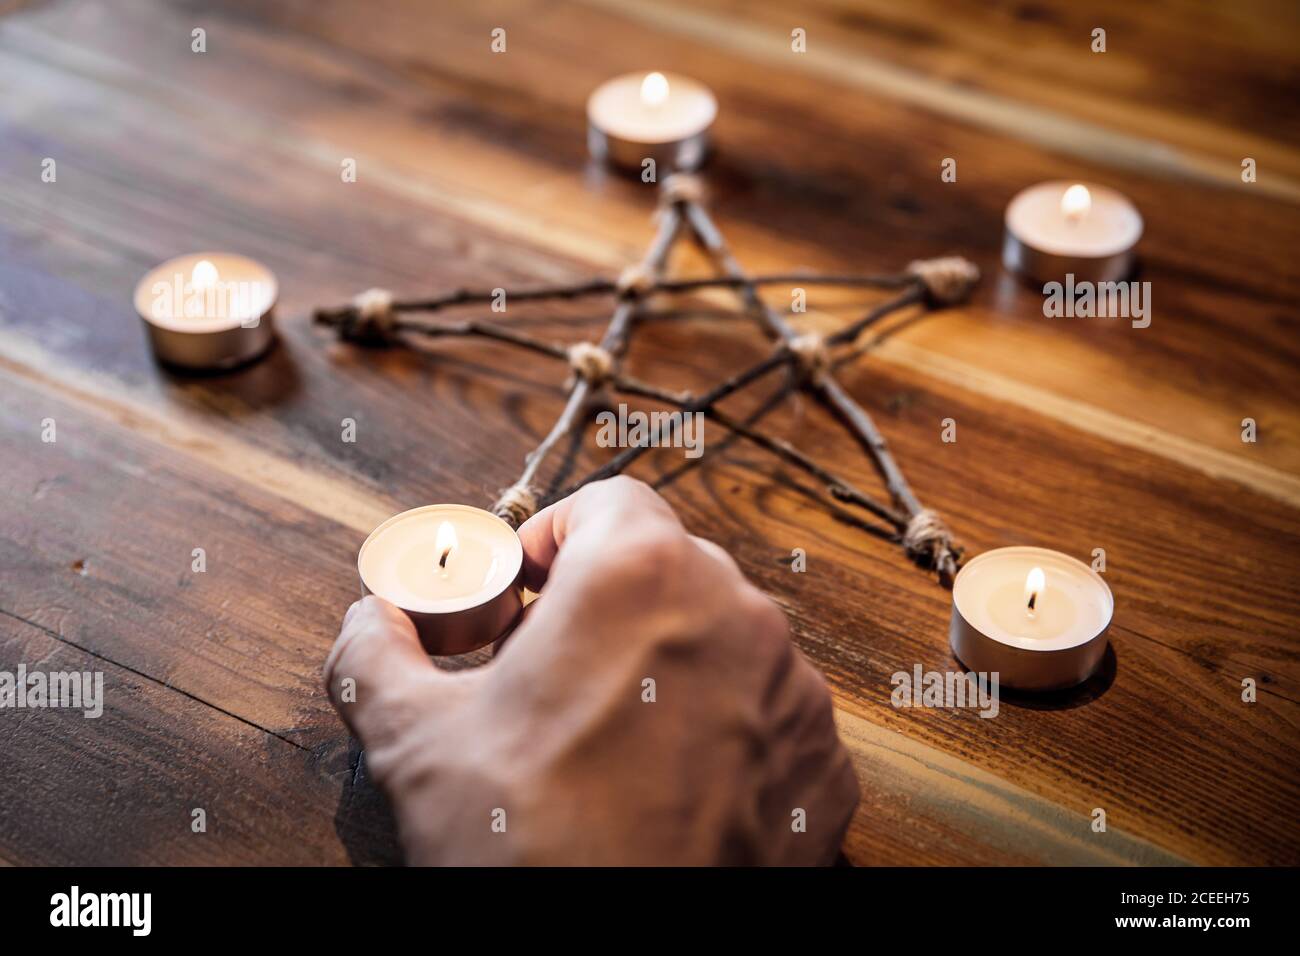 Preparación de un pentacle o pentagrama, ocultismo y ritual místico, closeup Foto de stock